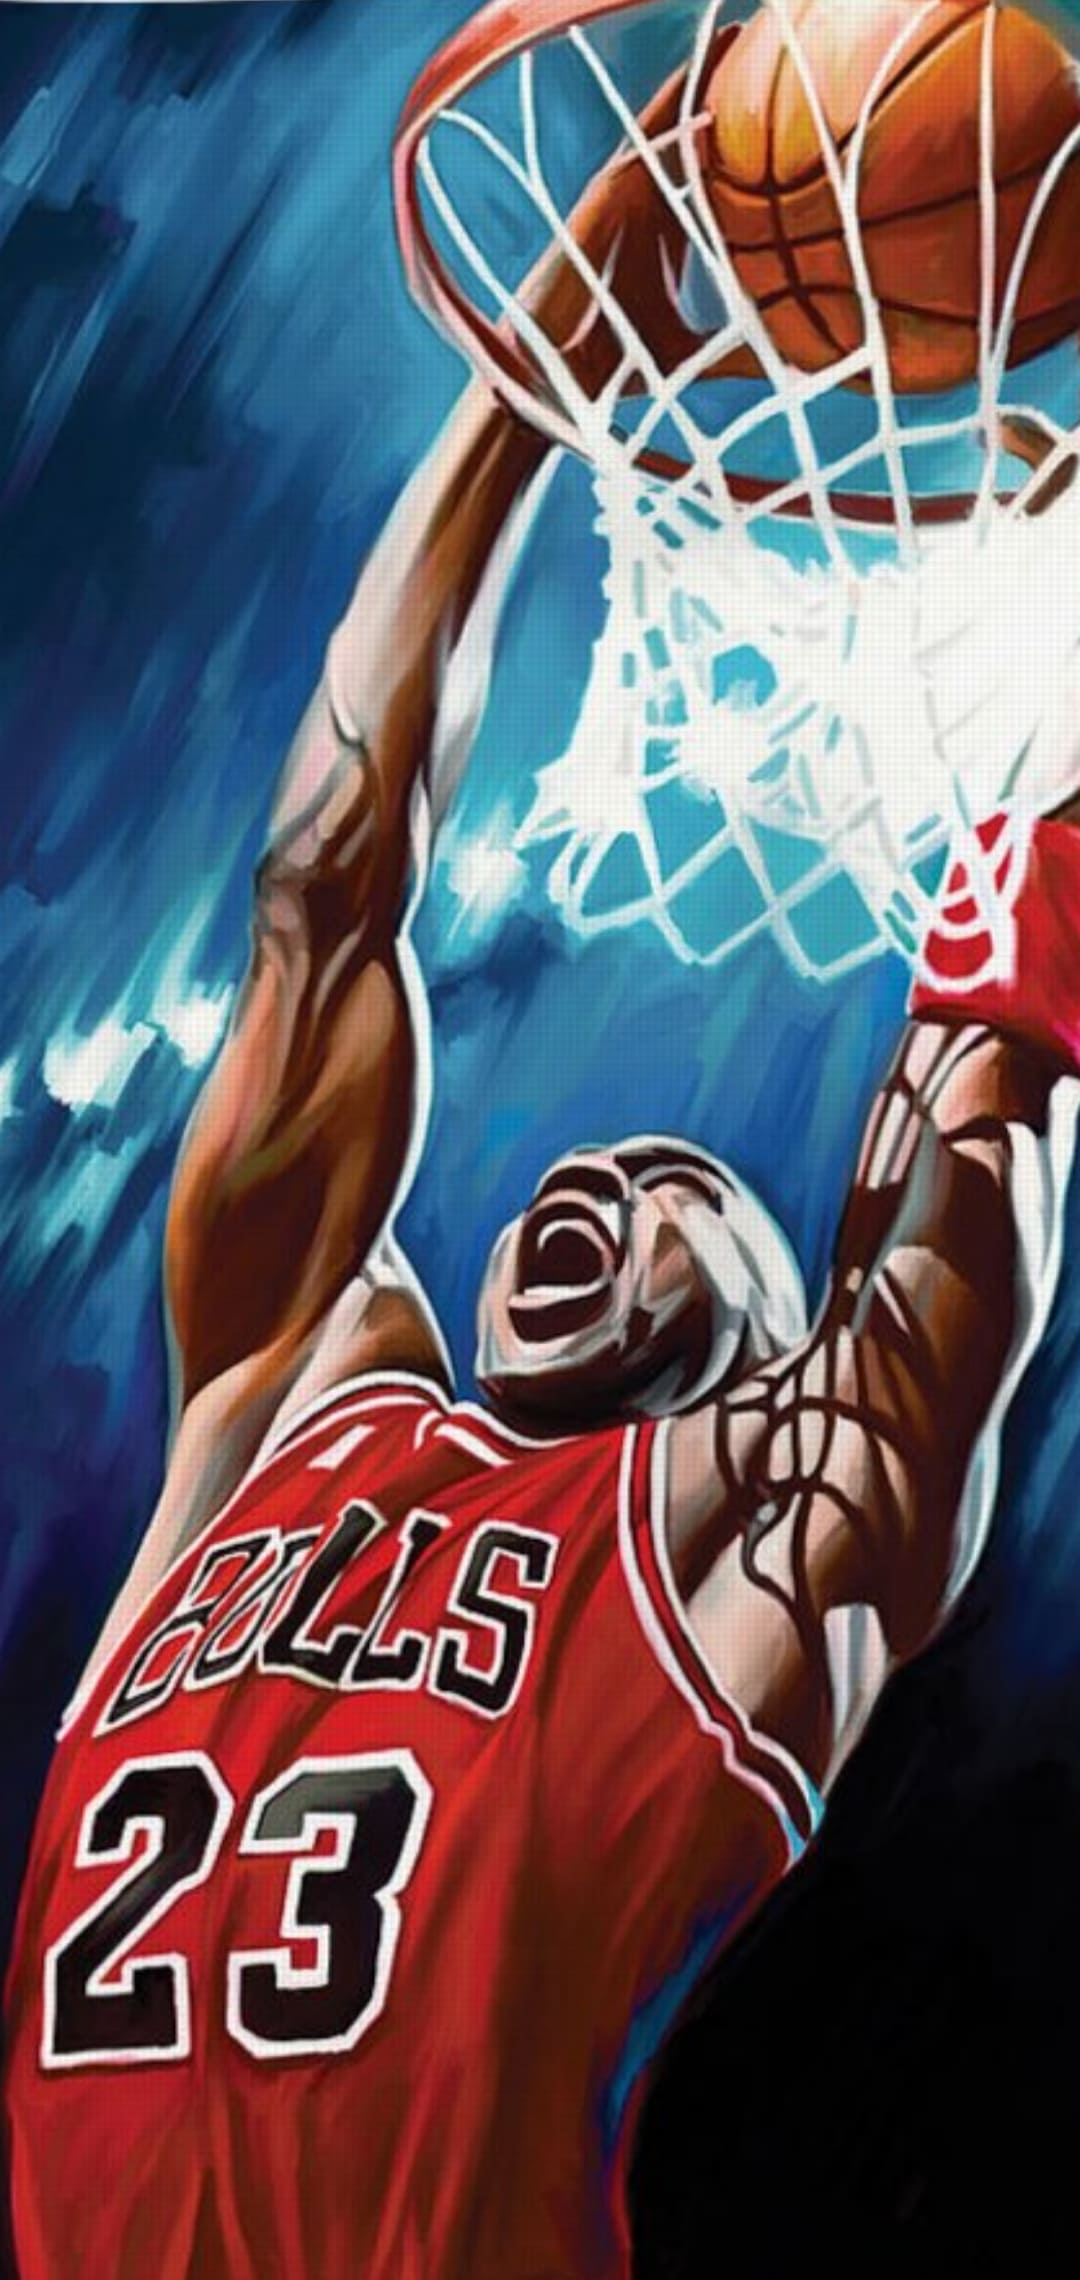 Michael Jordan Wallpaper 1920x1080 74 images